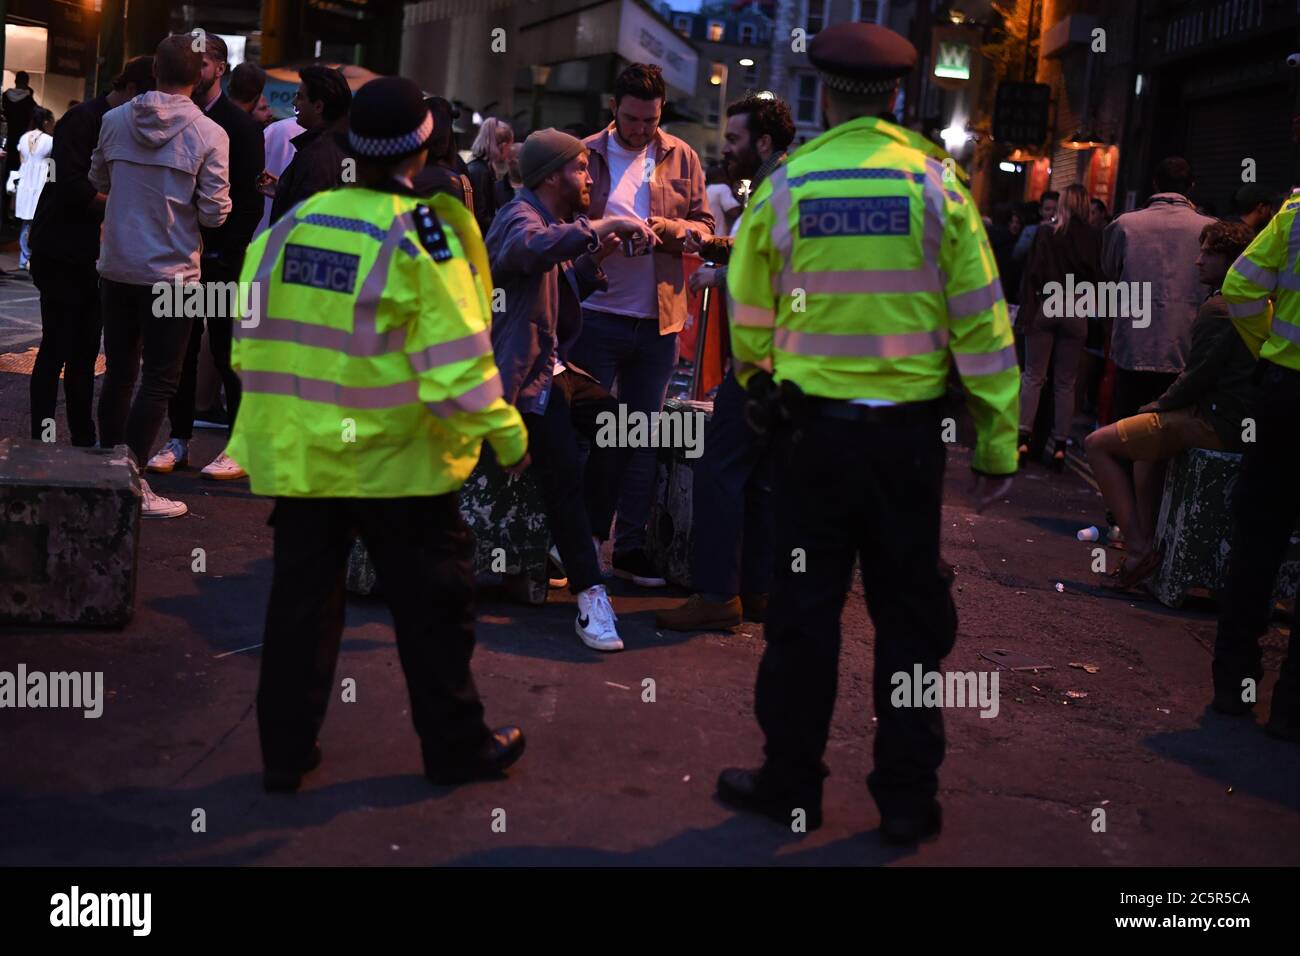 Ufficiale di polizia a Borough Market, Londra, mentre le restrizioni di blocco del coronavirus sono attenuate in tutta l'Inghilterra. Foto Stock